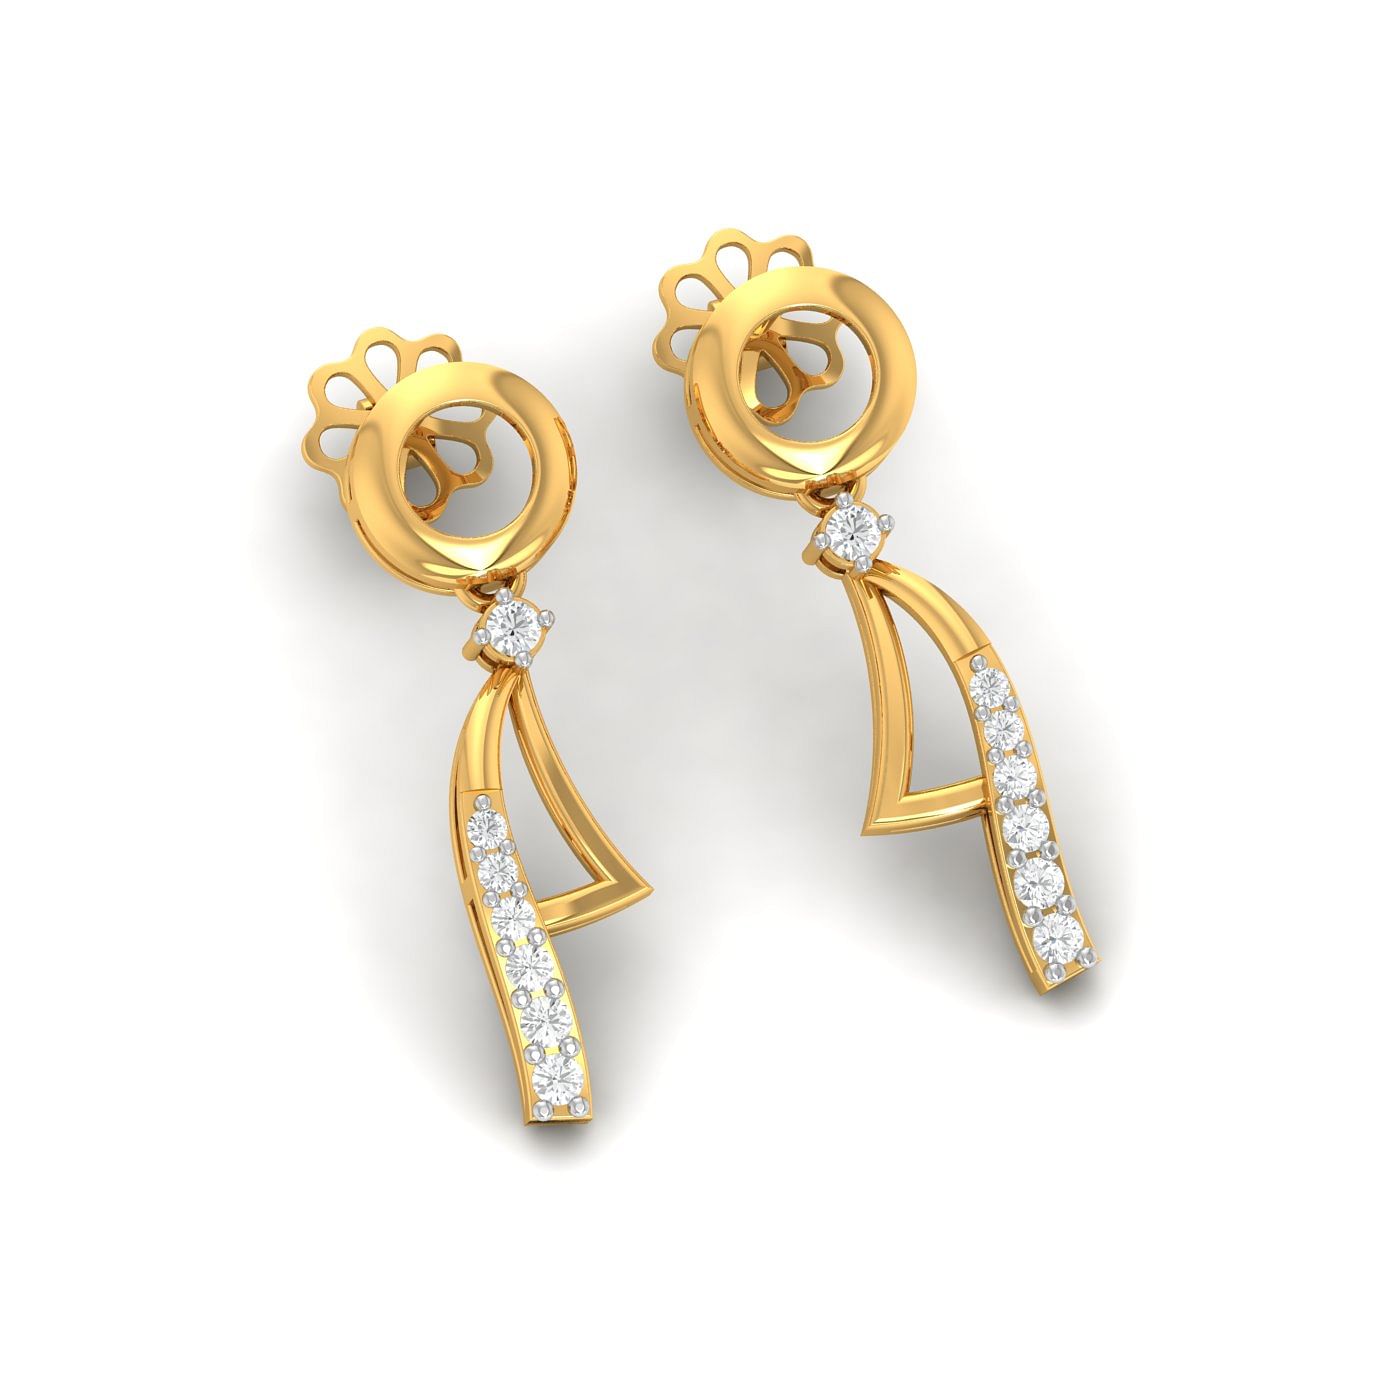 Yellow gold Circulo Drop Diamond Earrings